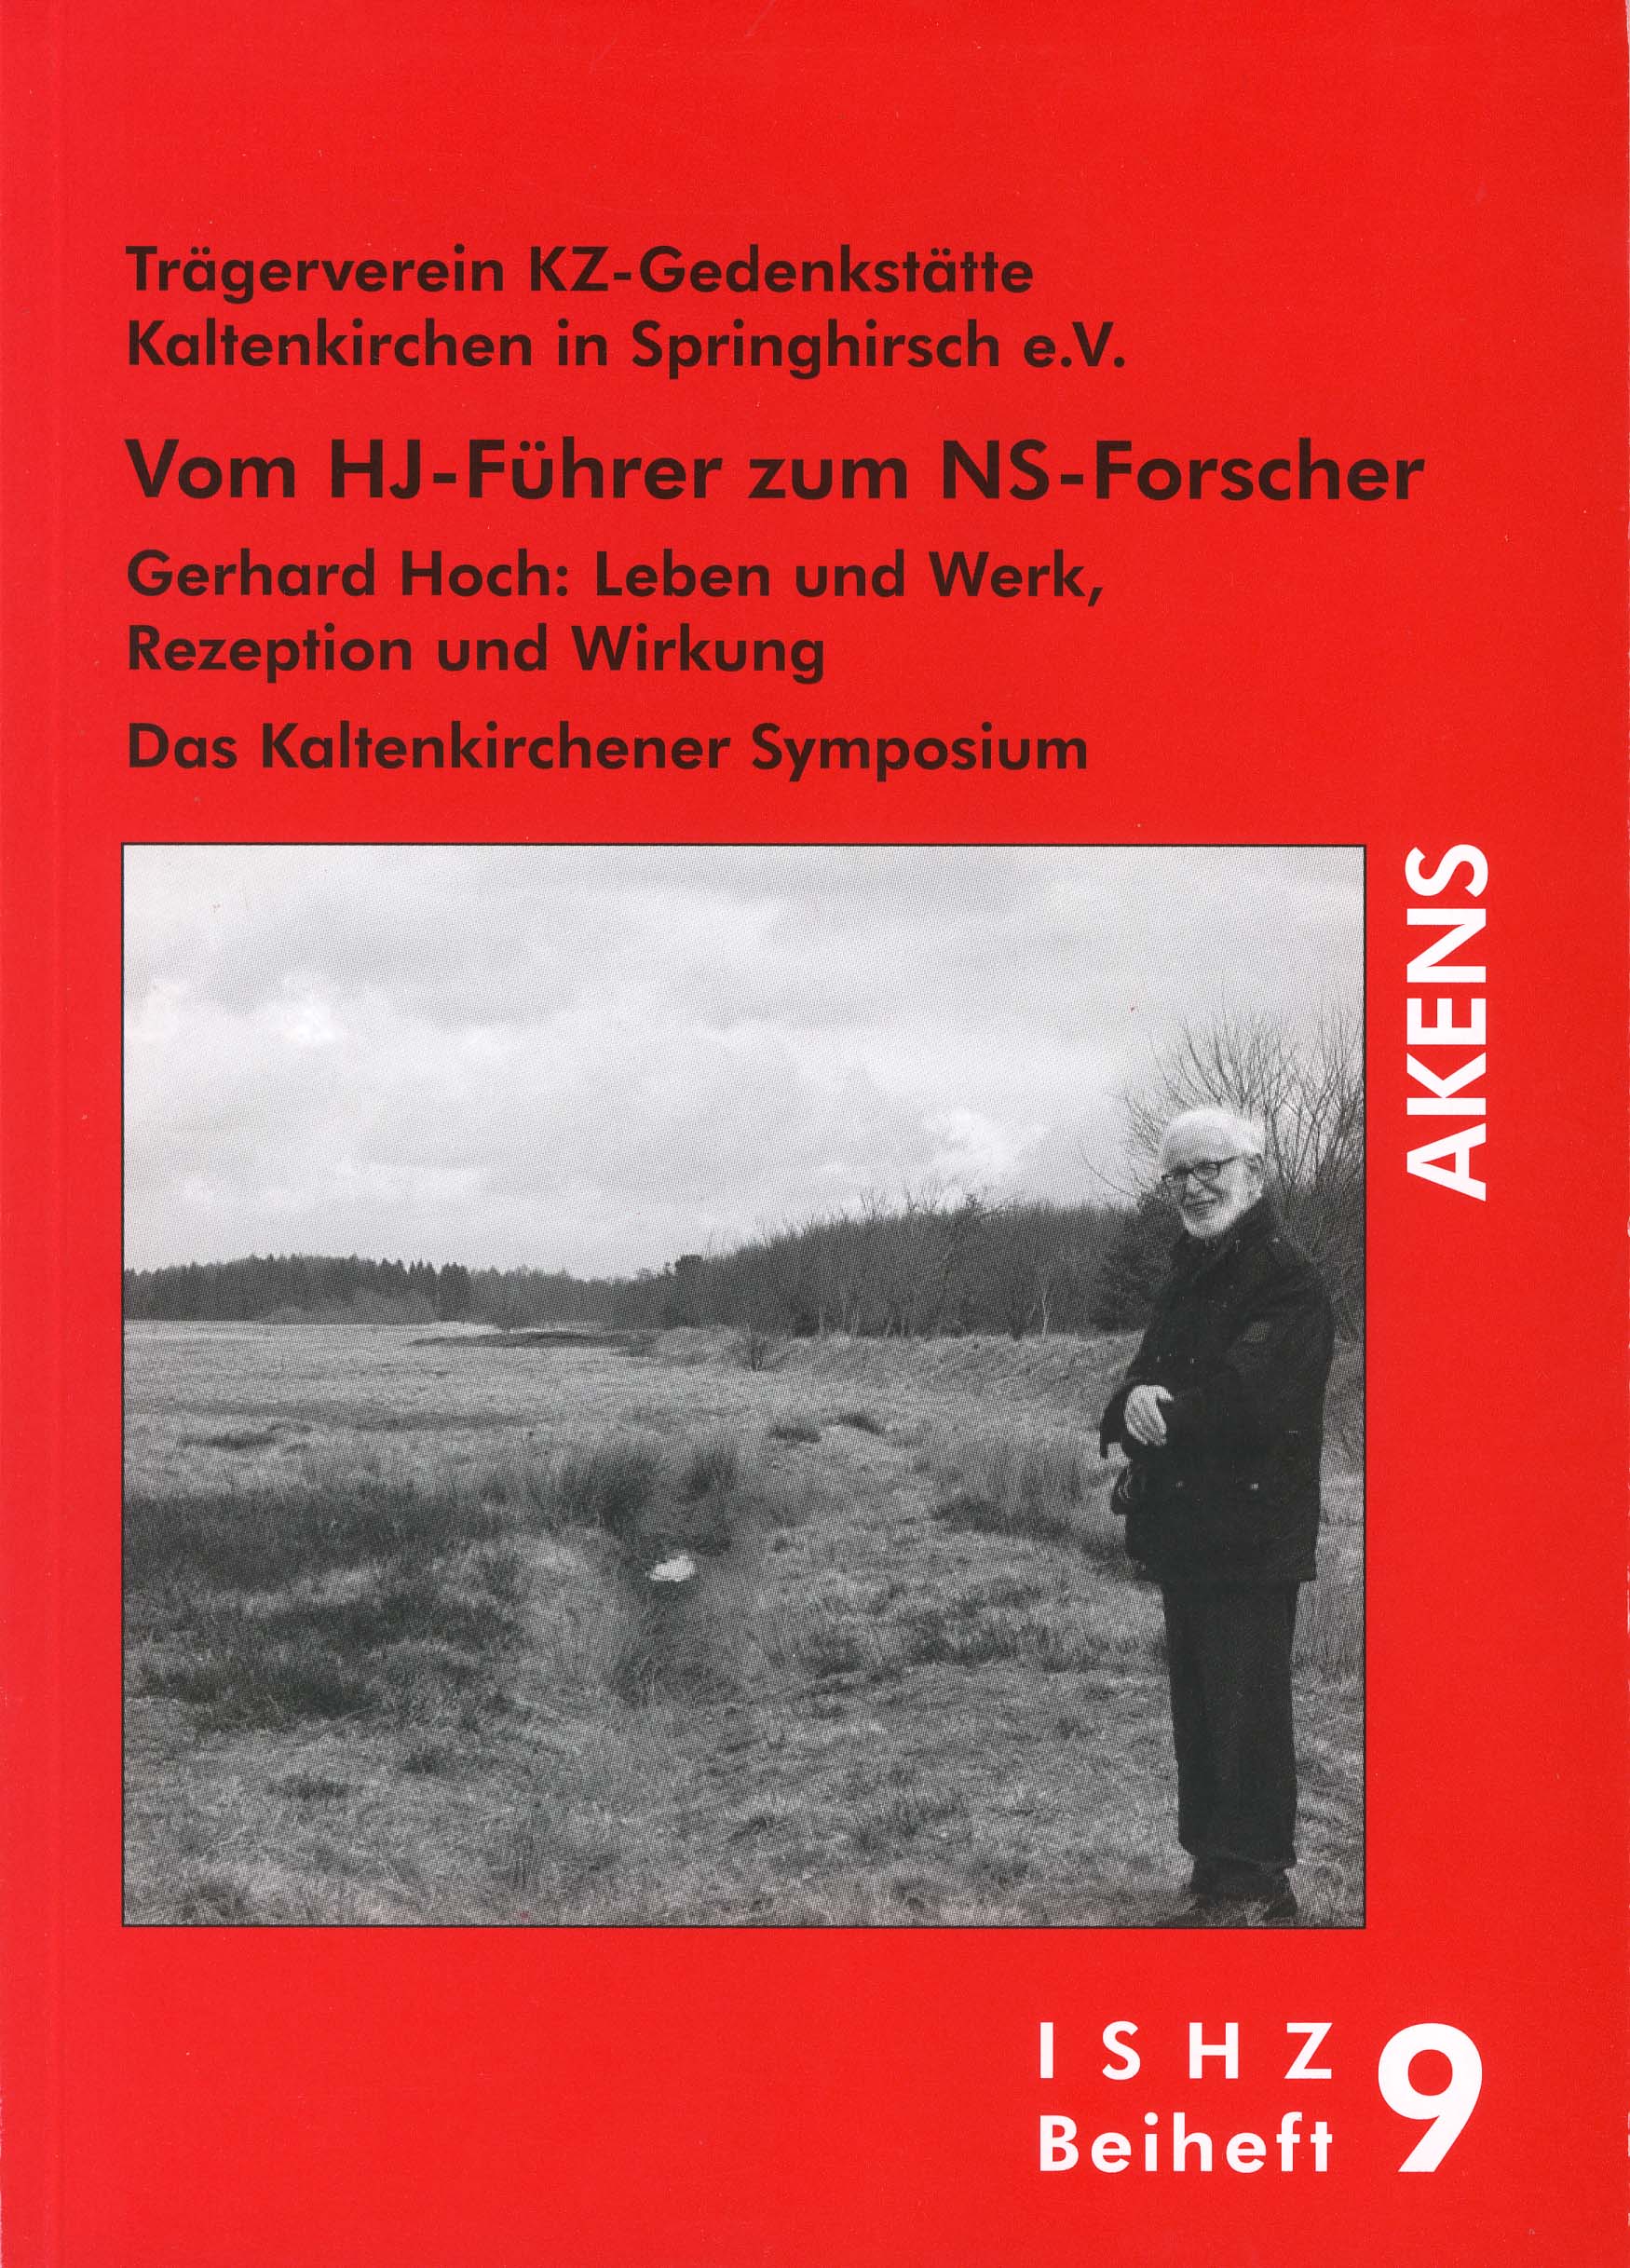 Titelbild des Beiheftes. Darauf ist Gerhard Hoch vor einer herbstlichen Graslandschaft zu sehen.